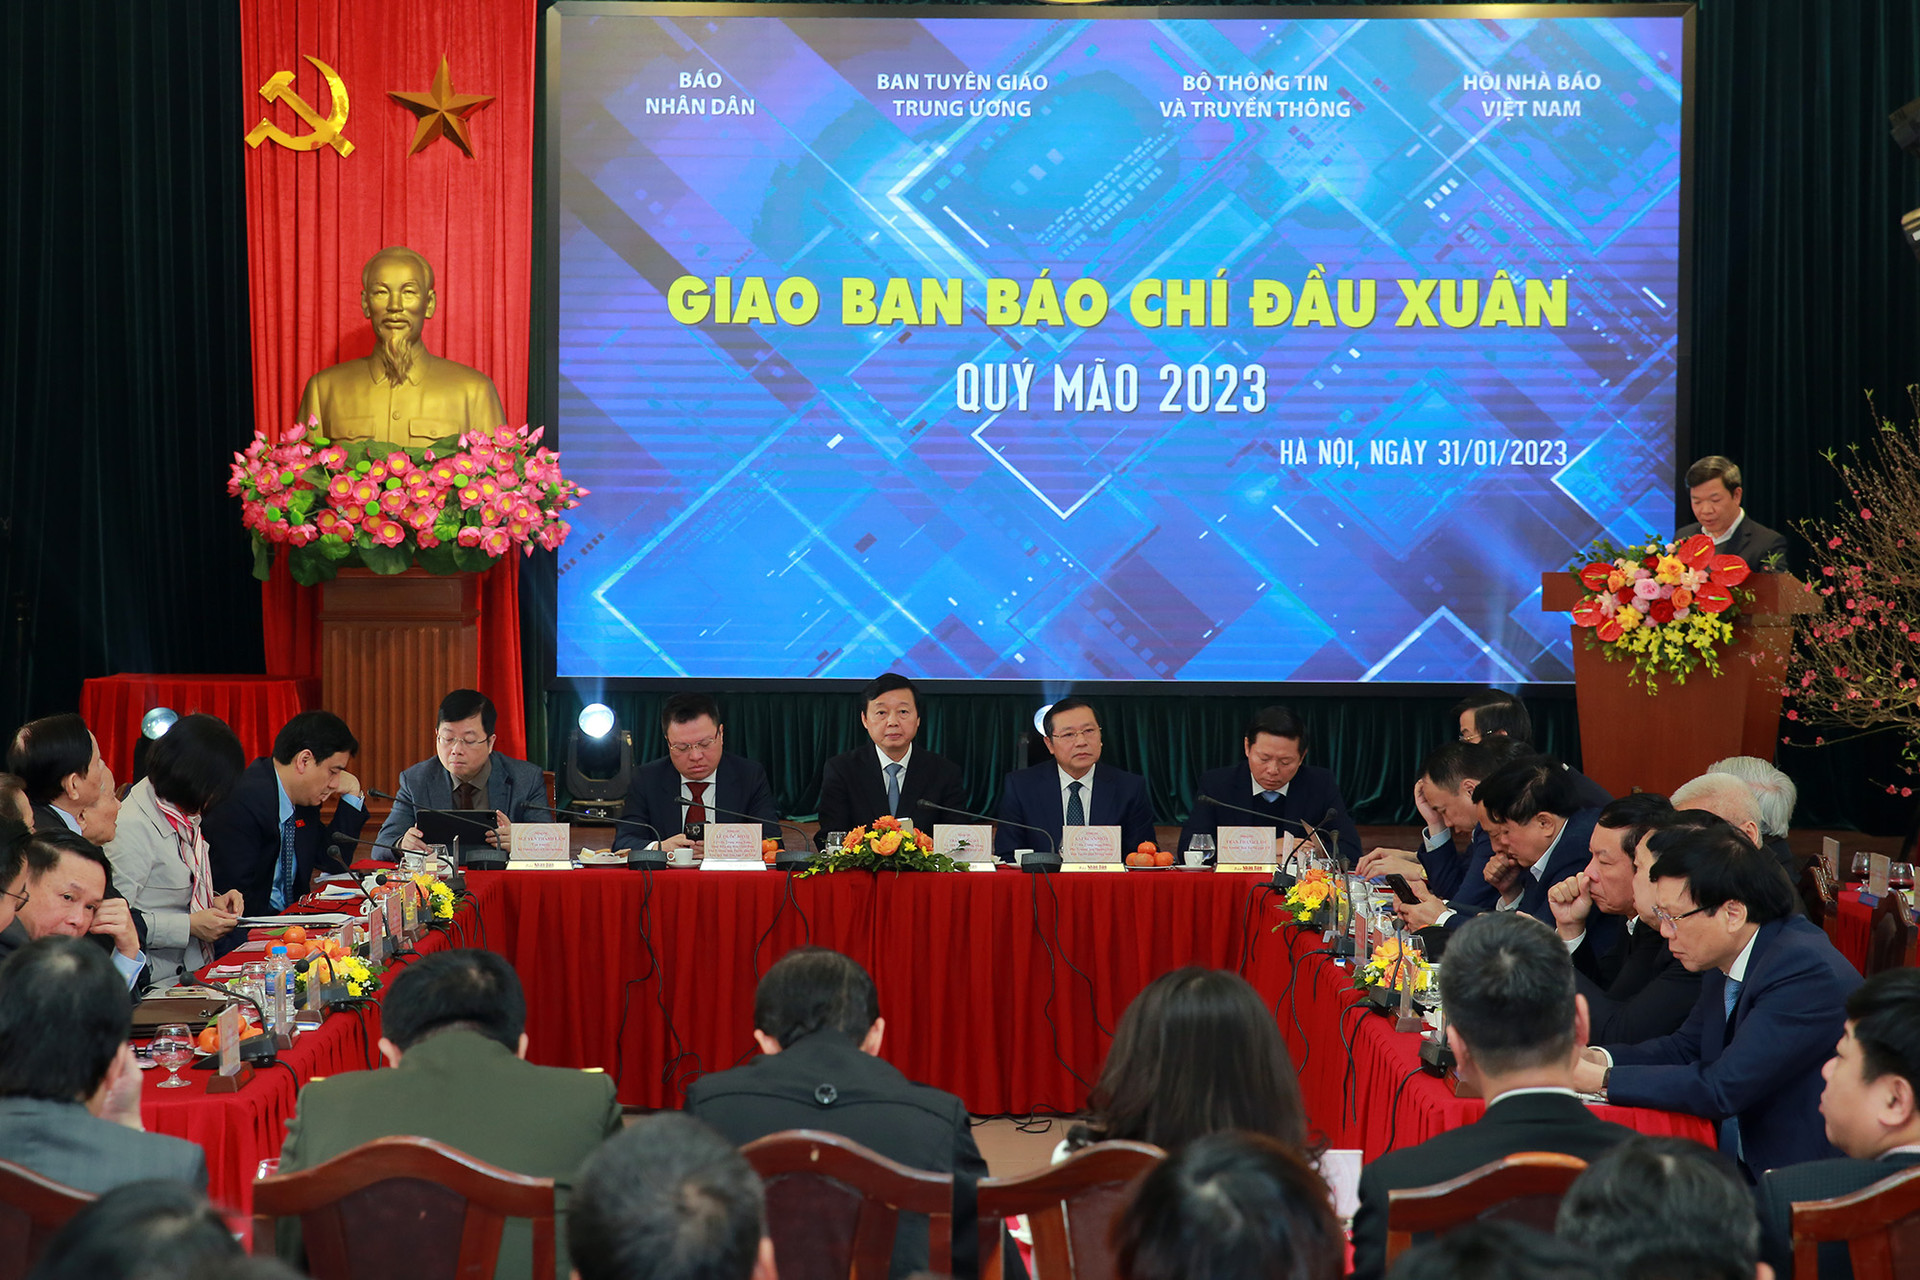 Phó Thủ tướng Trần Hồng Hà 'đặt hàng' tại Giao ban Báo chí đầu xuân - Ảnh 3.